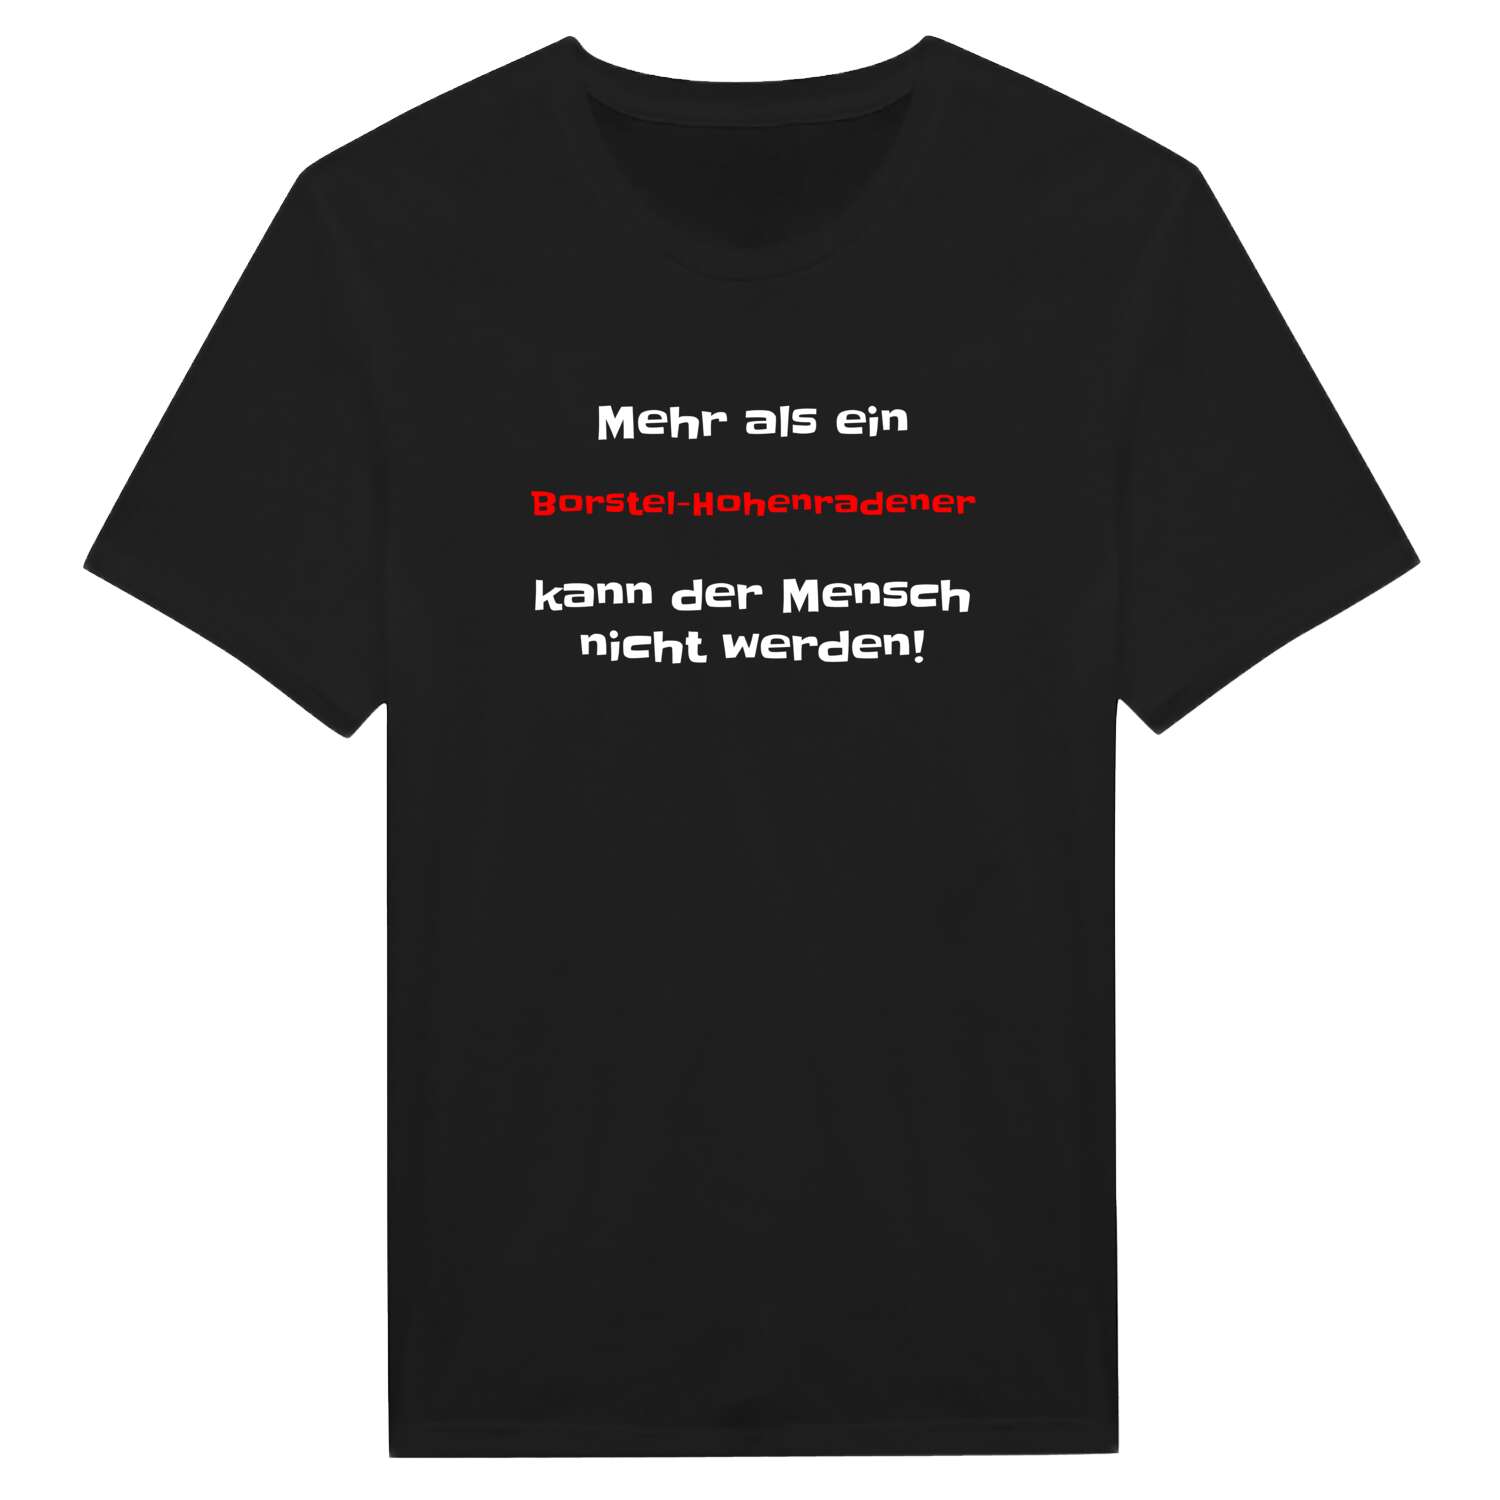 Borstel-Hohenraden T-Shirt »Mehr als ein«